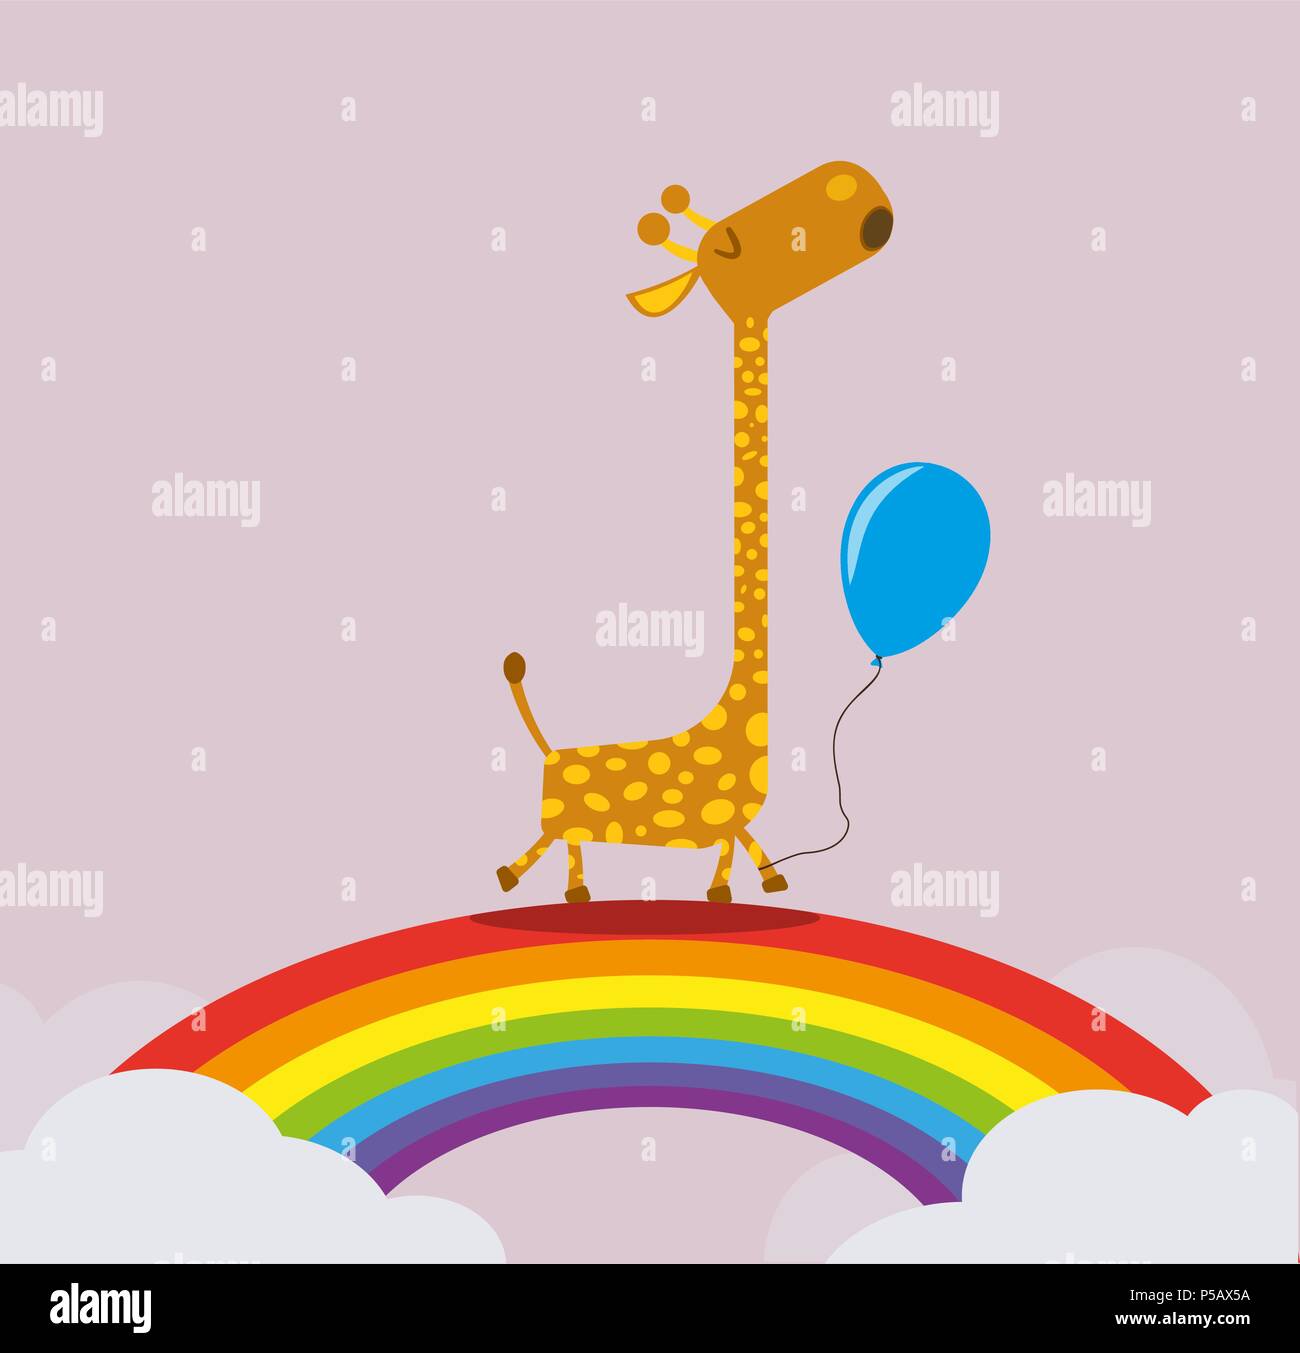 La giraffa holding palloncino camminando su rainbow greeting card modello Illustrazione Vettoriale